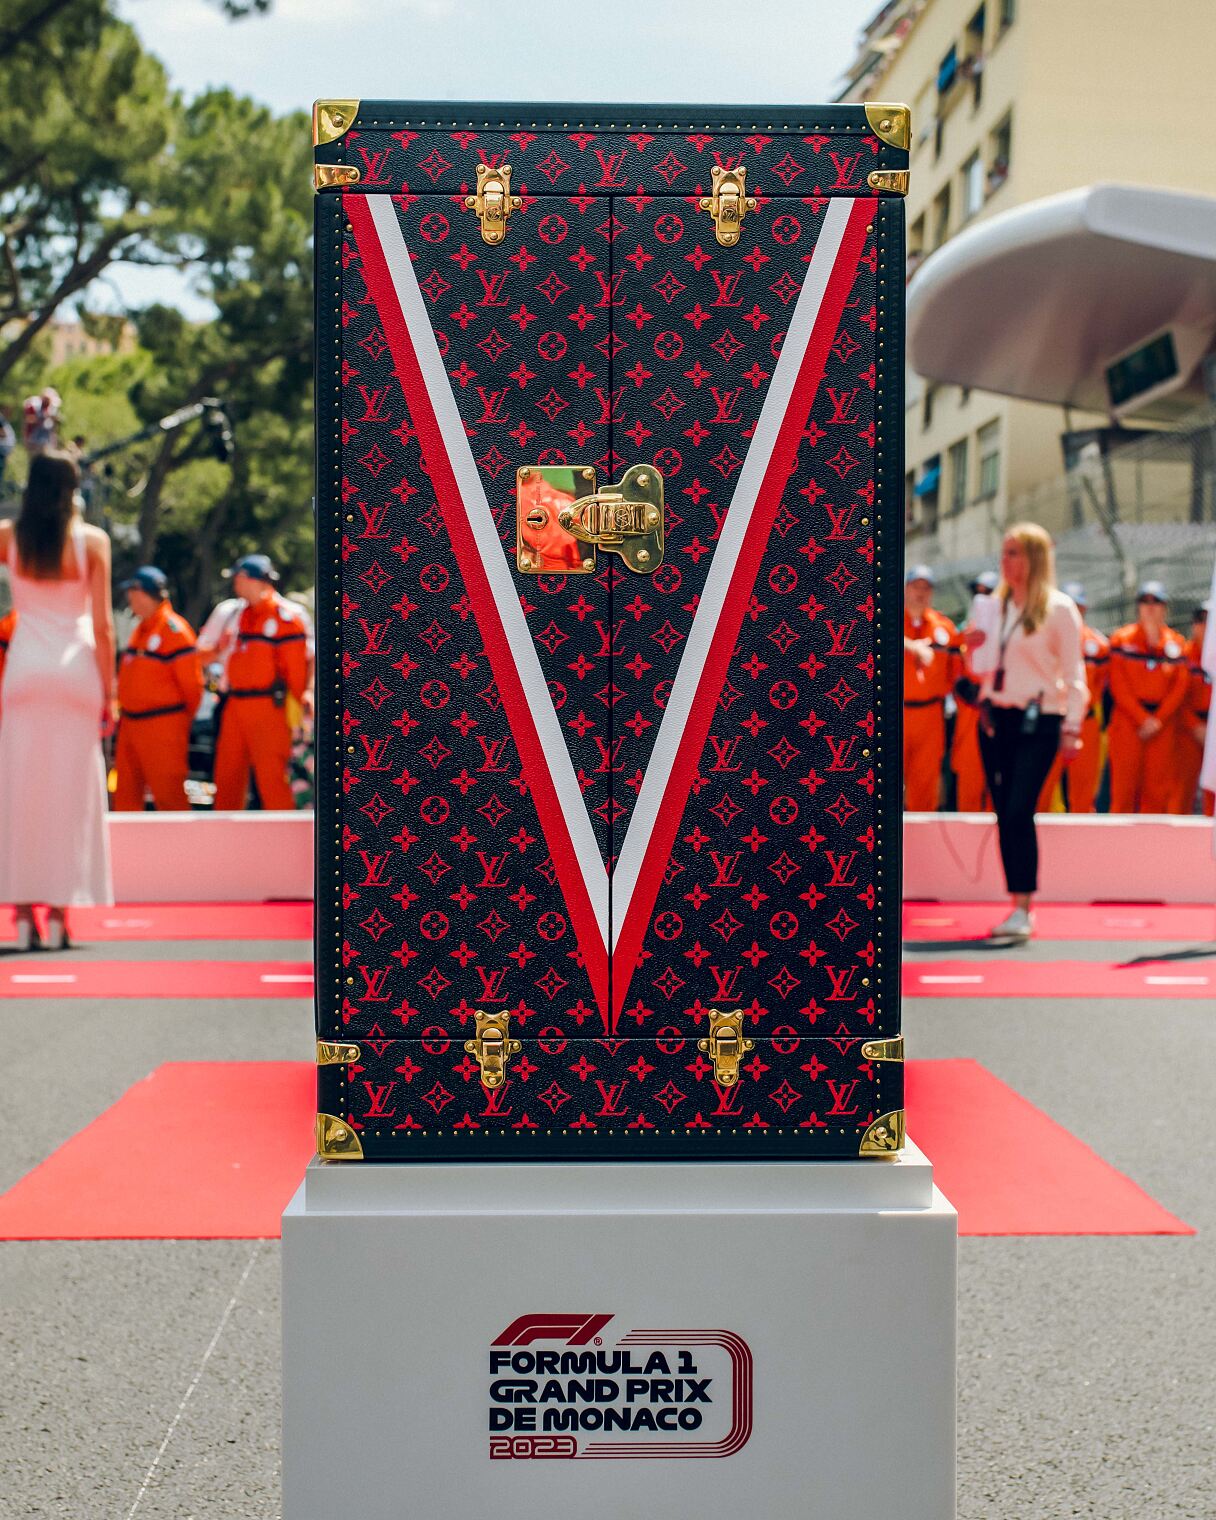 Louis Vuitton_Trophy Travel Case for the Formula 1 Grand Prix de Monaco_Prerace National Anthem Ceremony_Photographer Dorian Prost (2)